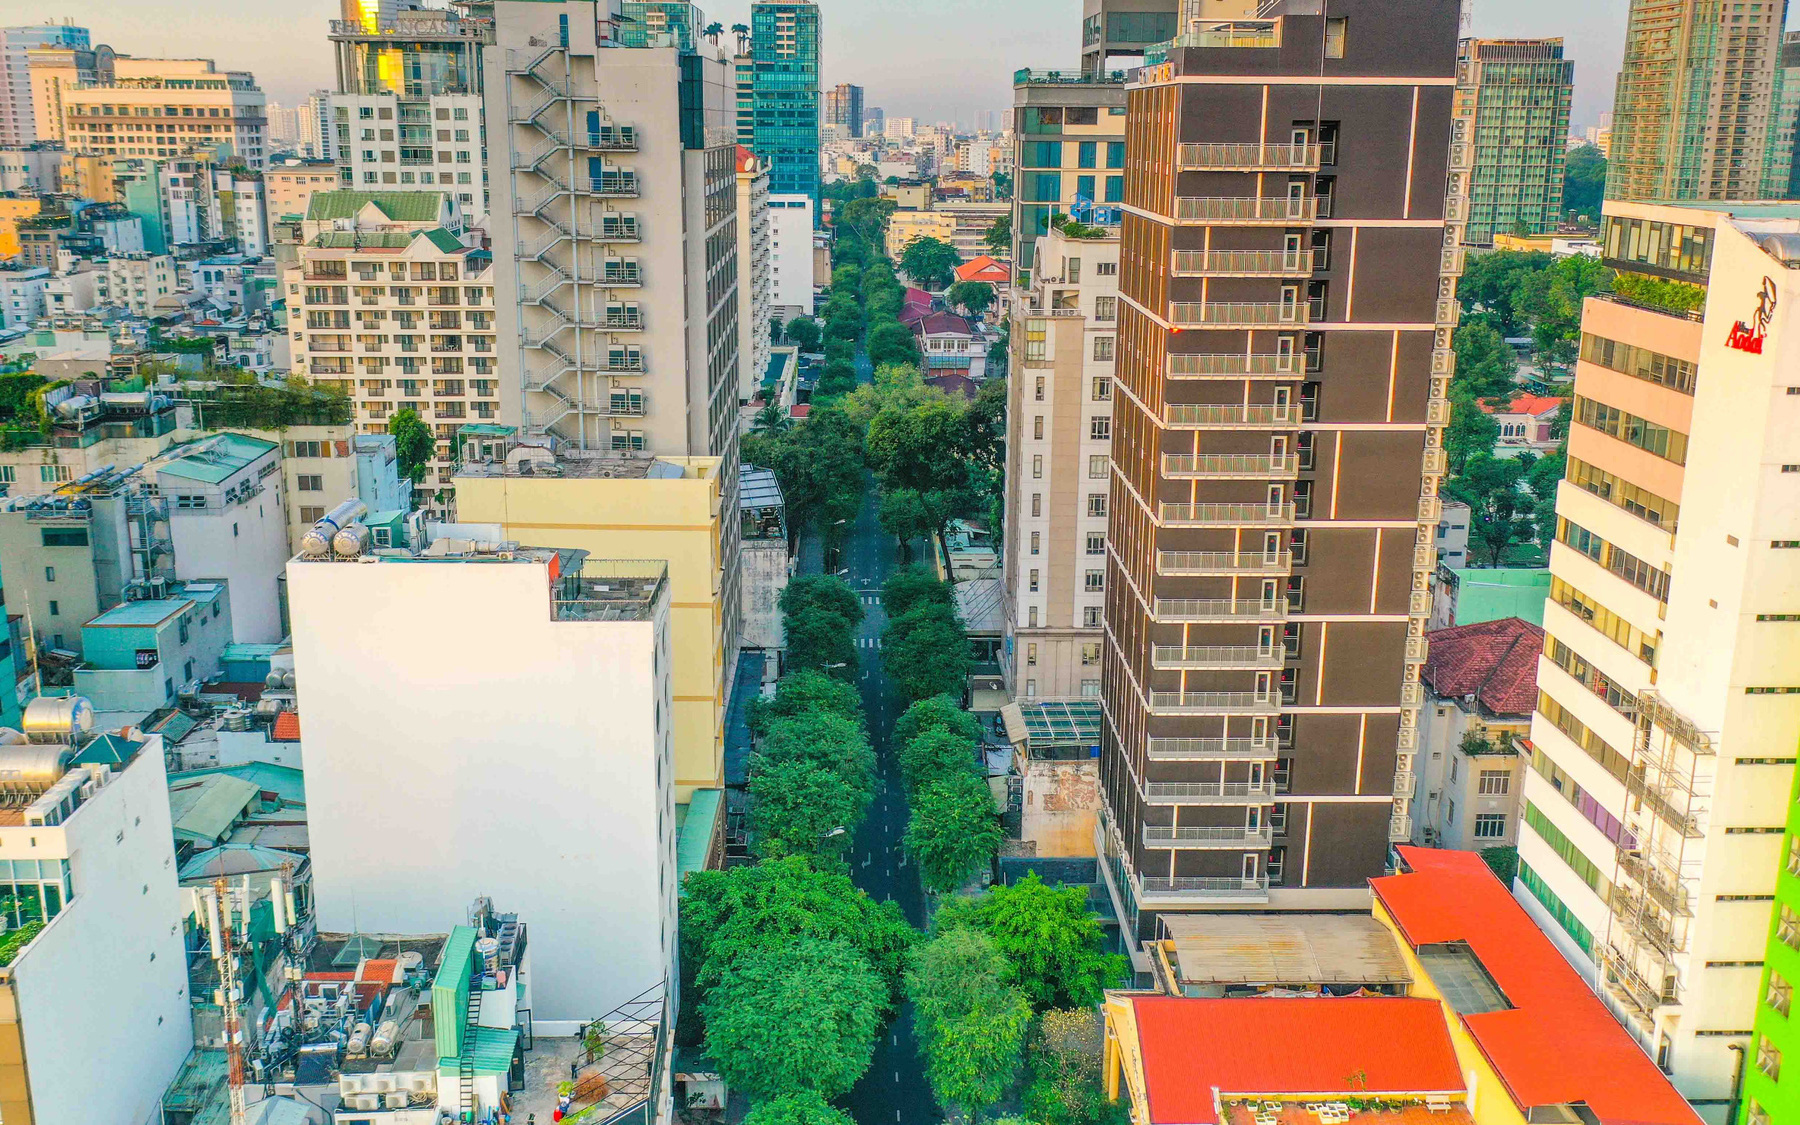 Đường phố Sài Gòn - Những ký ức thân thương Kỳ 4: Lý Tự Trọng "đường giờ đây đã sống bao thăng trầm"